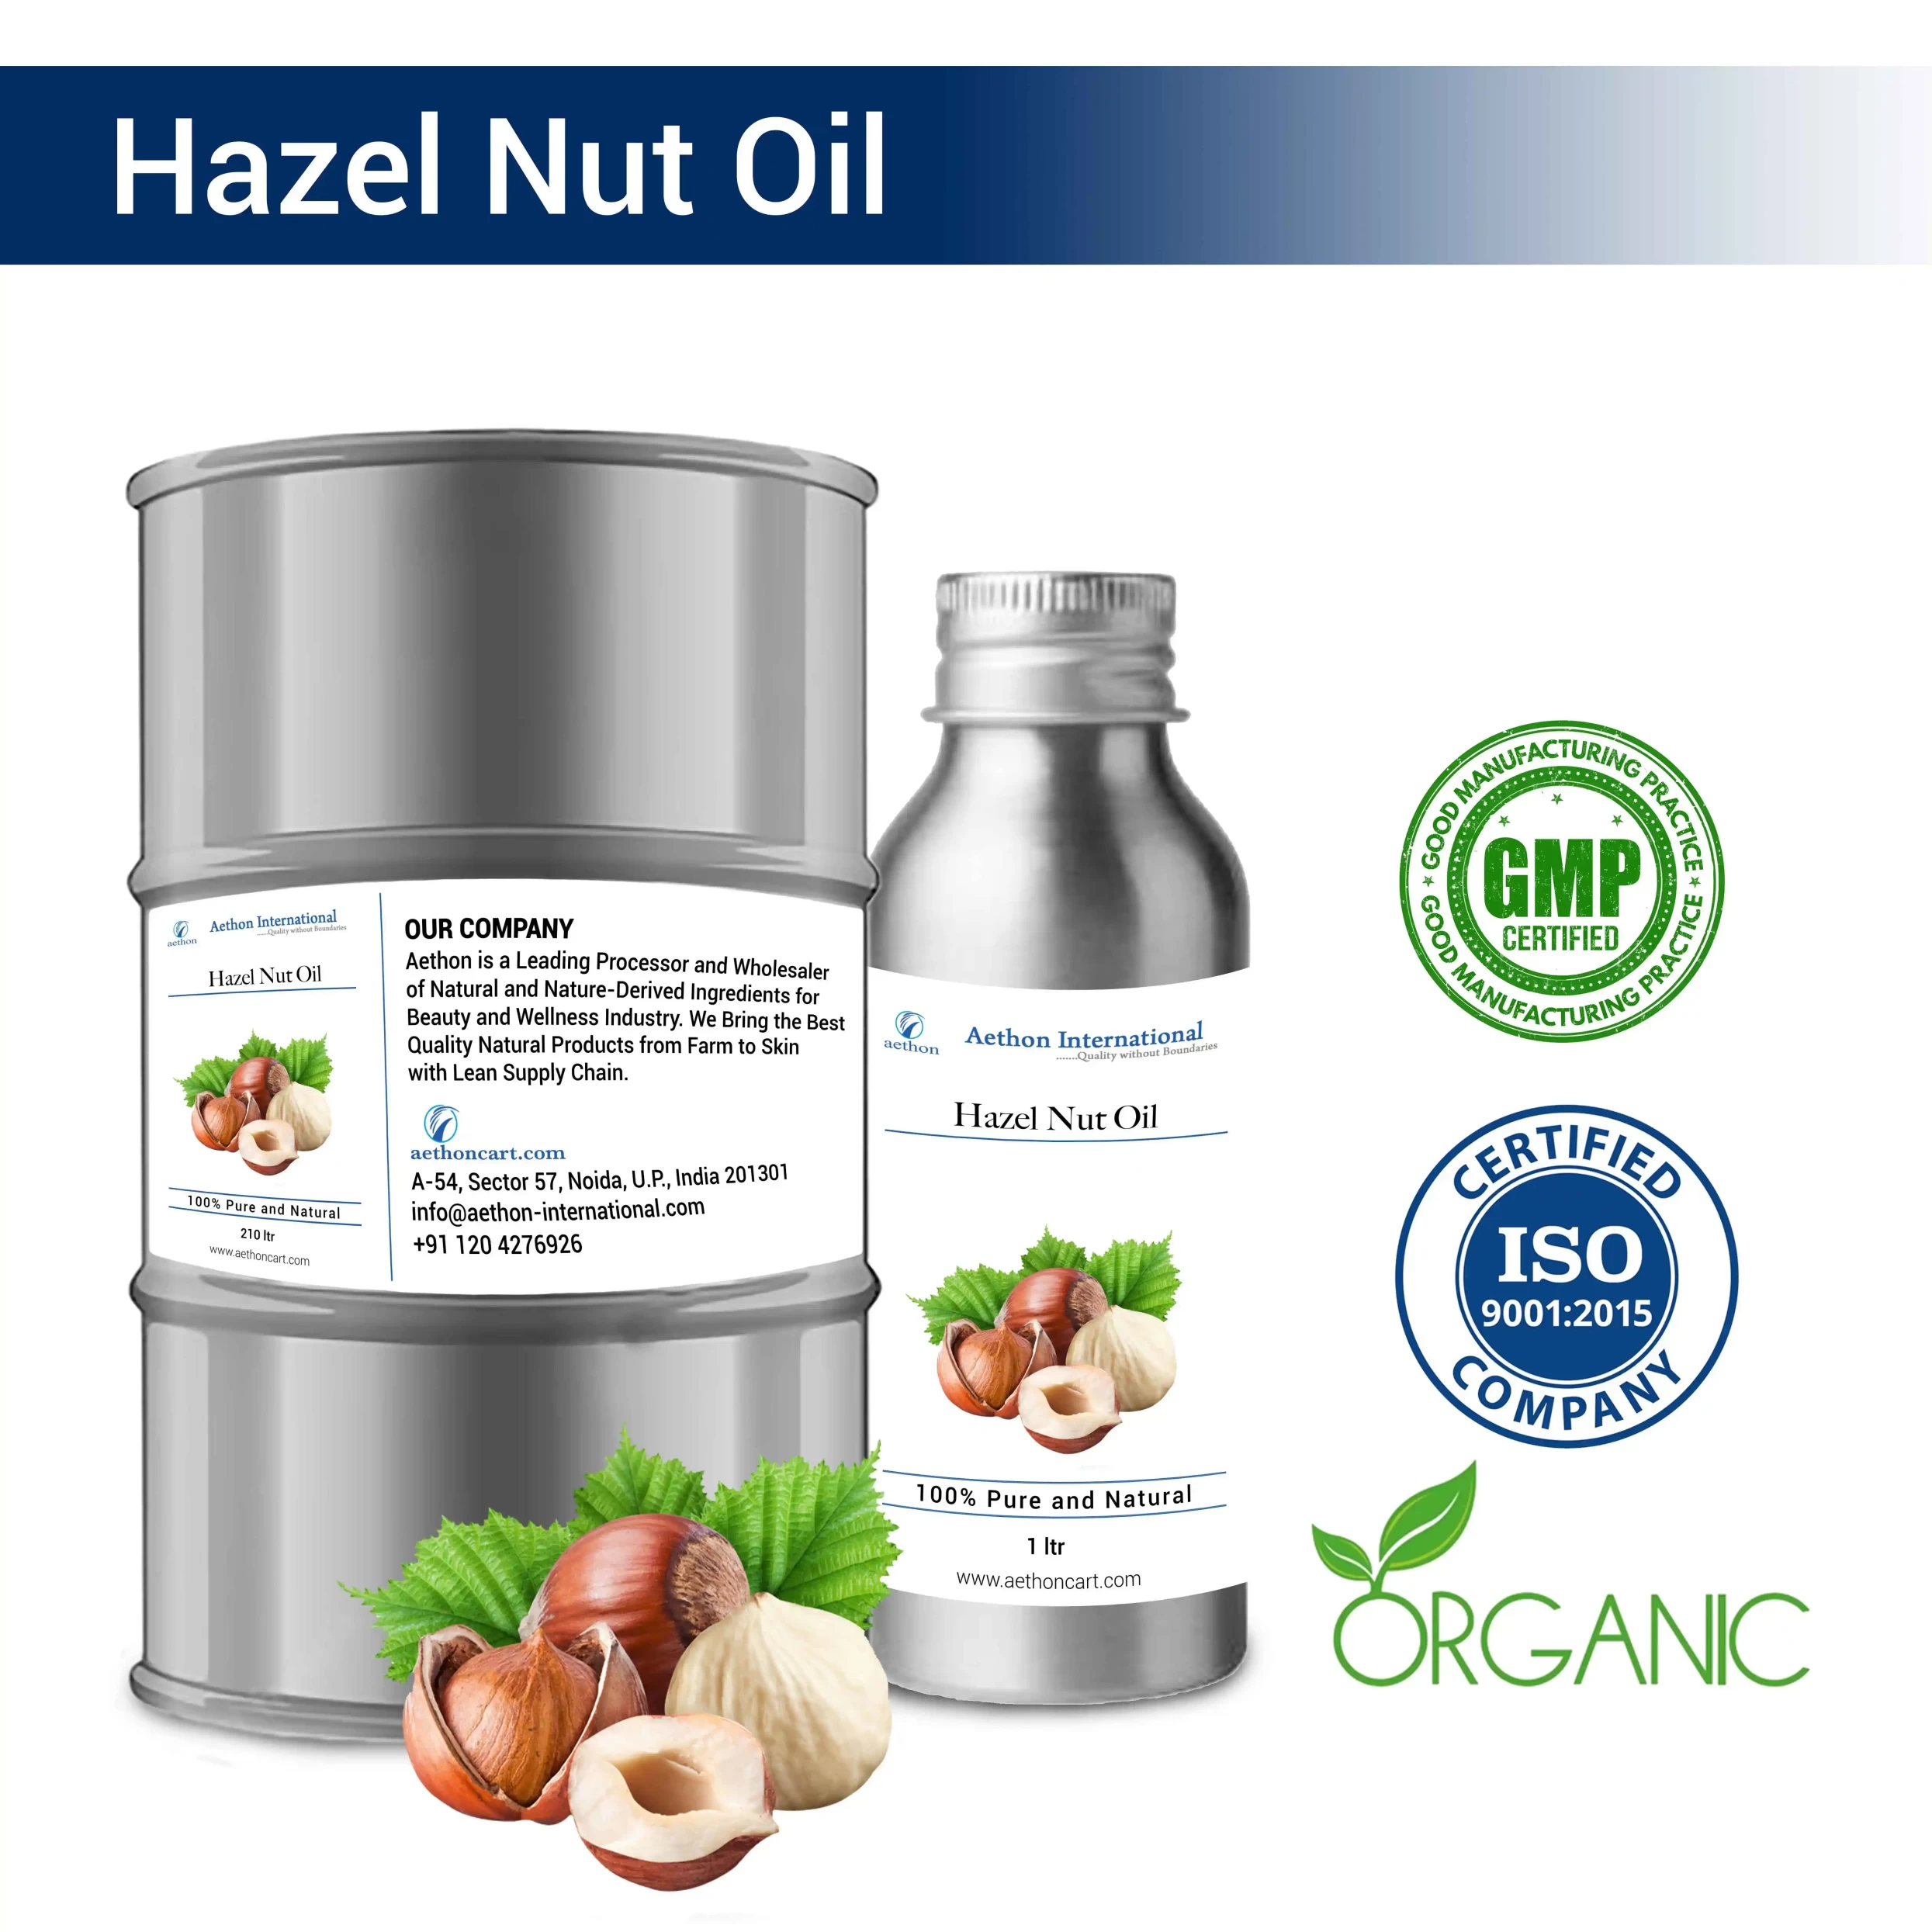 Hazel Nut Oil